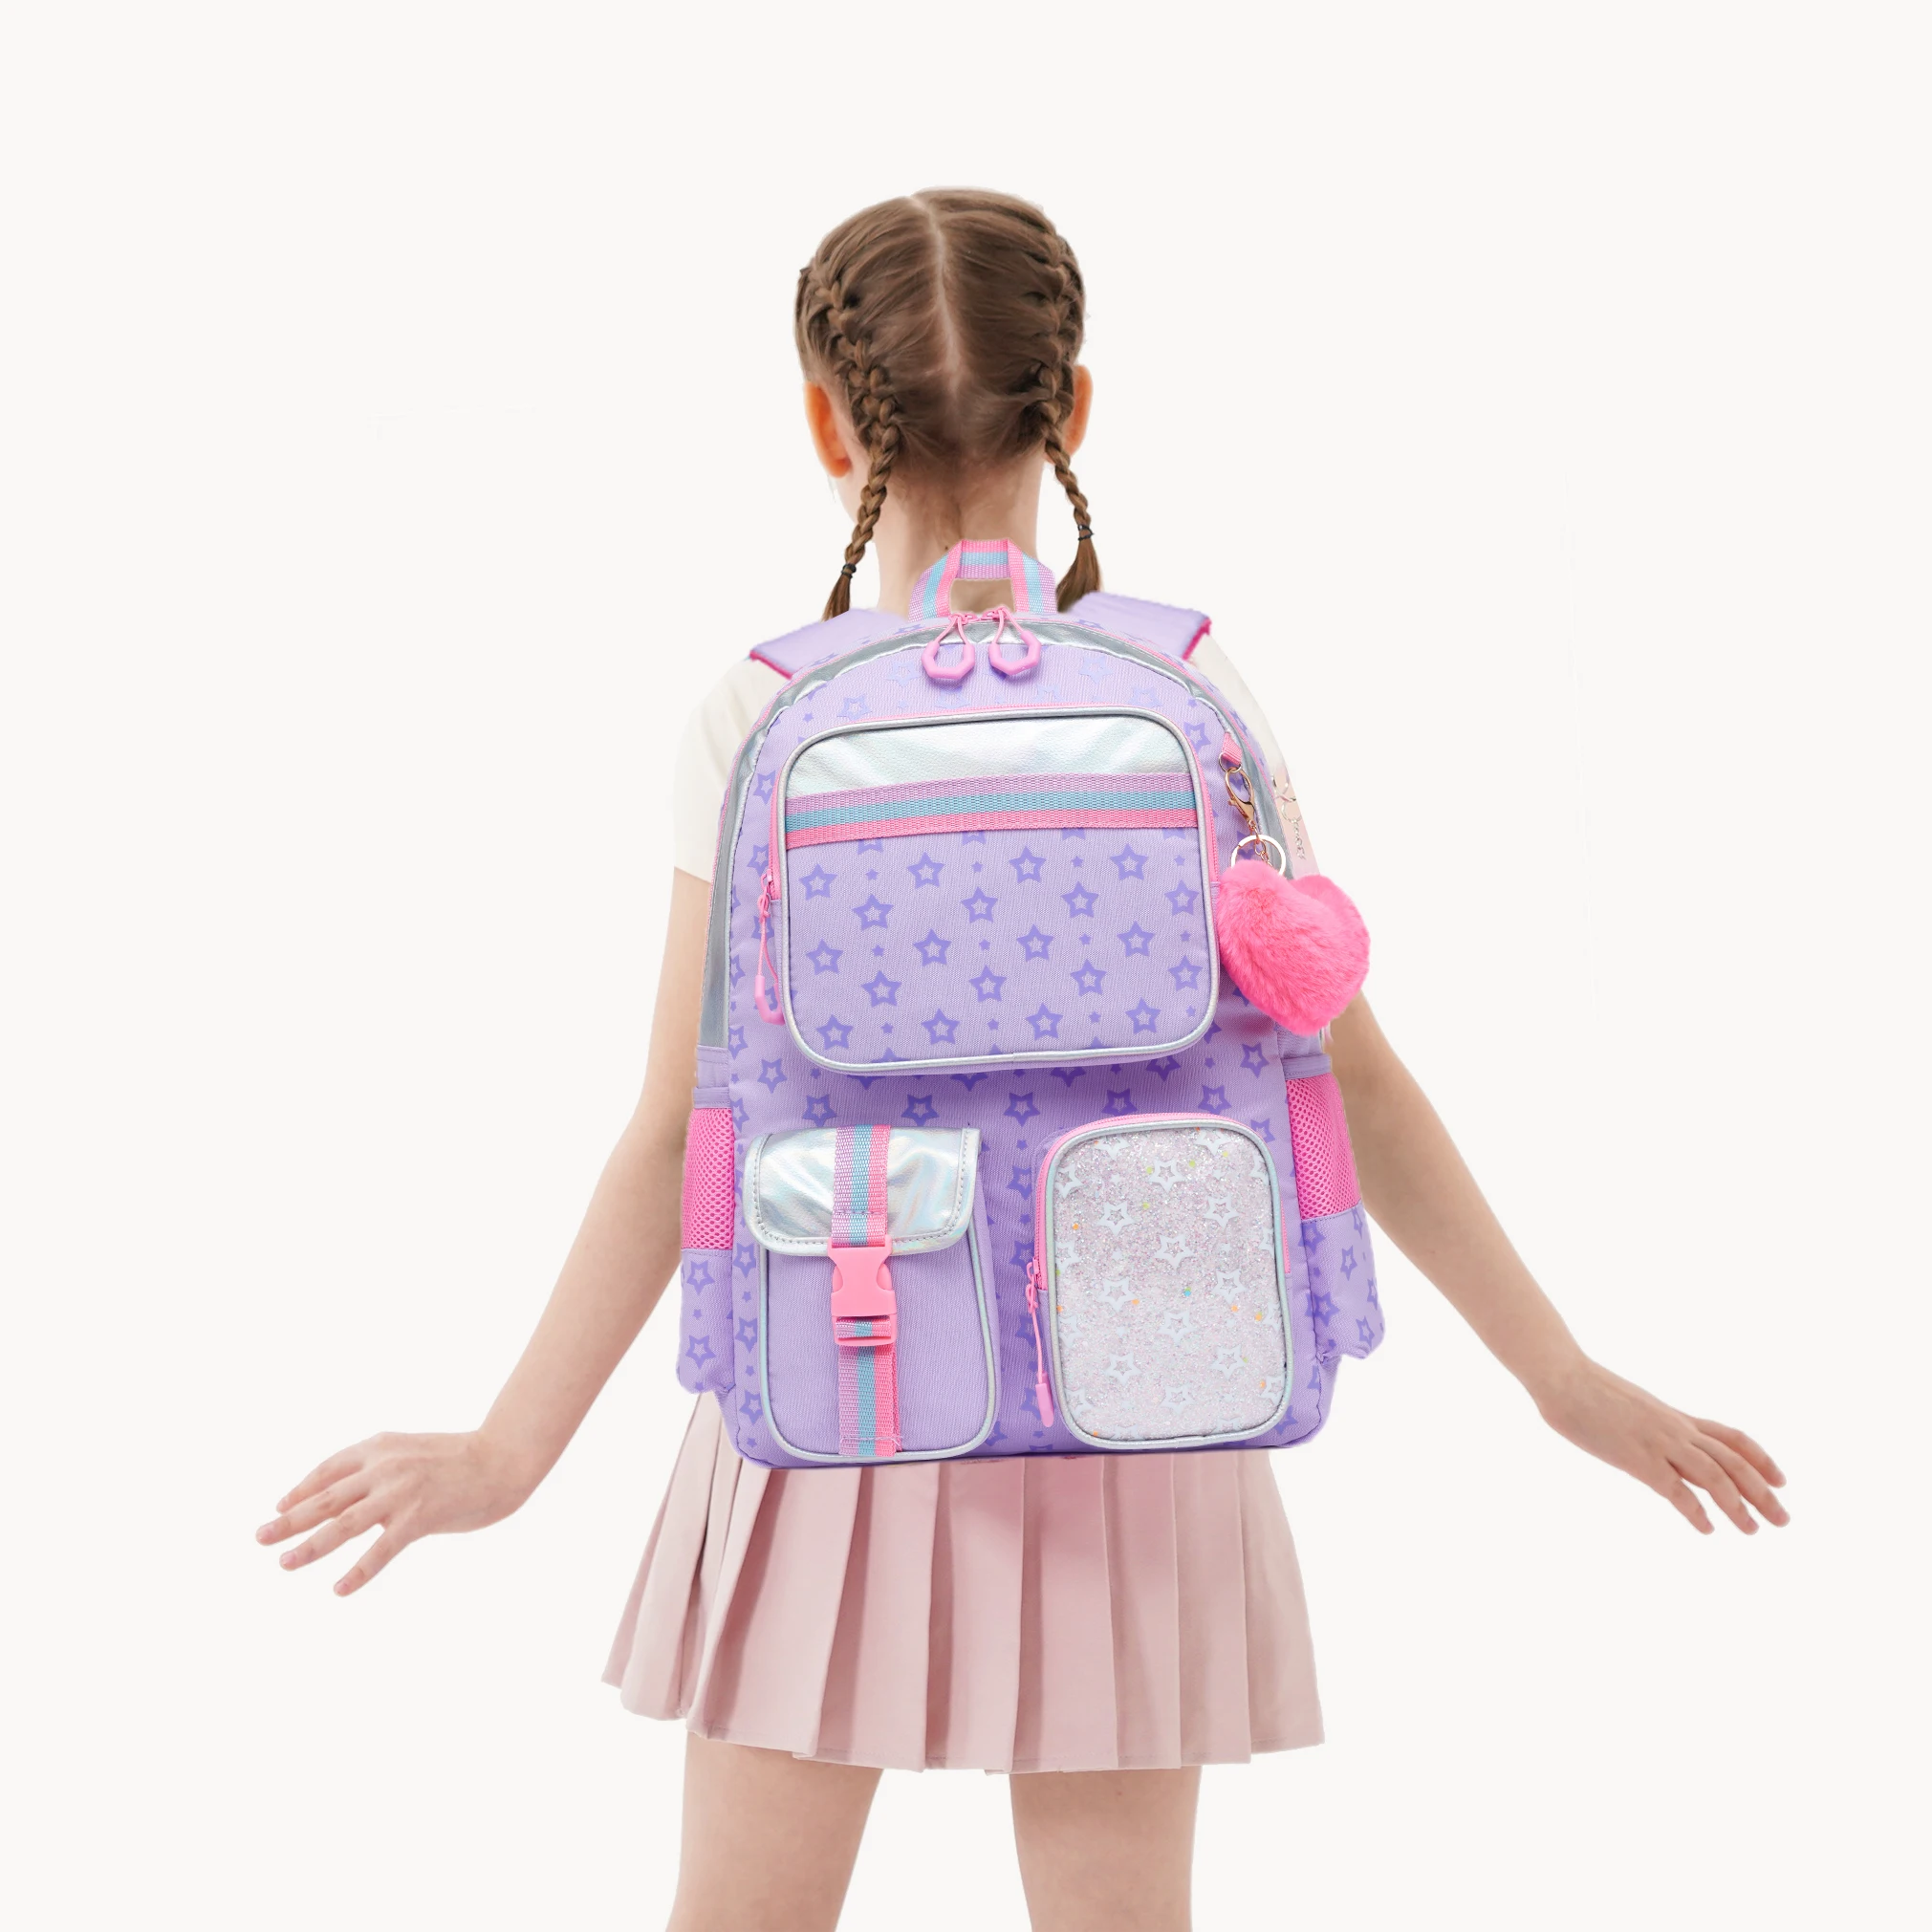 Meetbelify Multifunctional Backpack Girls School Bag Pentagram Printed School Bag with Lunchbag and Pencilbag